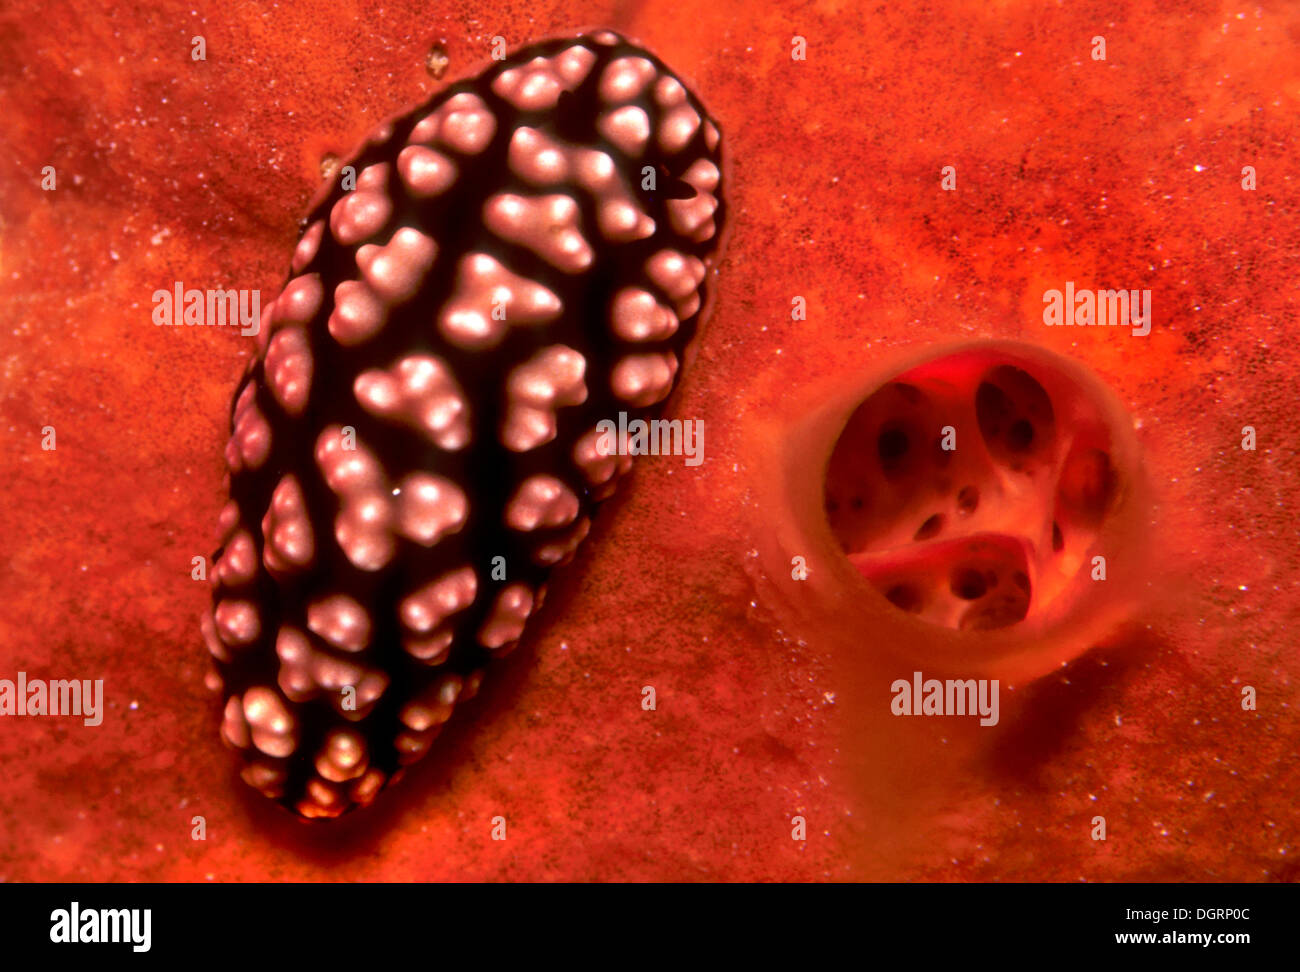 Pustulose Wart Slug (Phyllidiella Pustular), Philippines Stock Photo